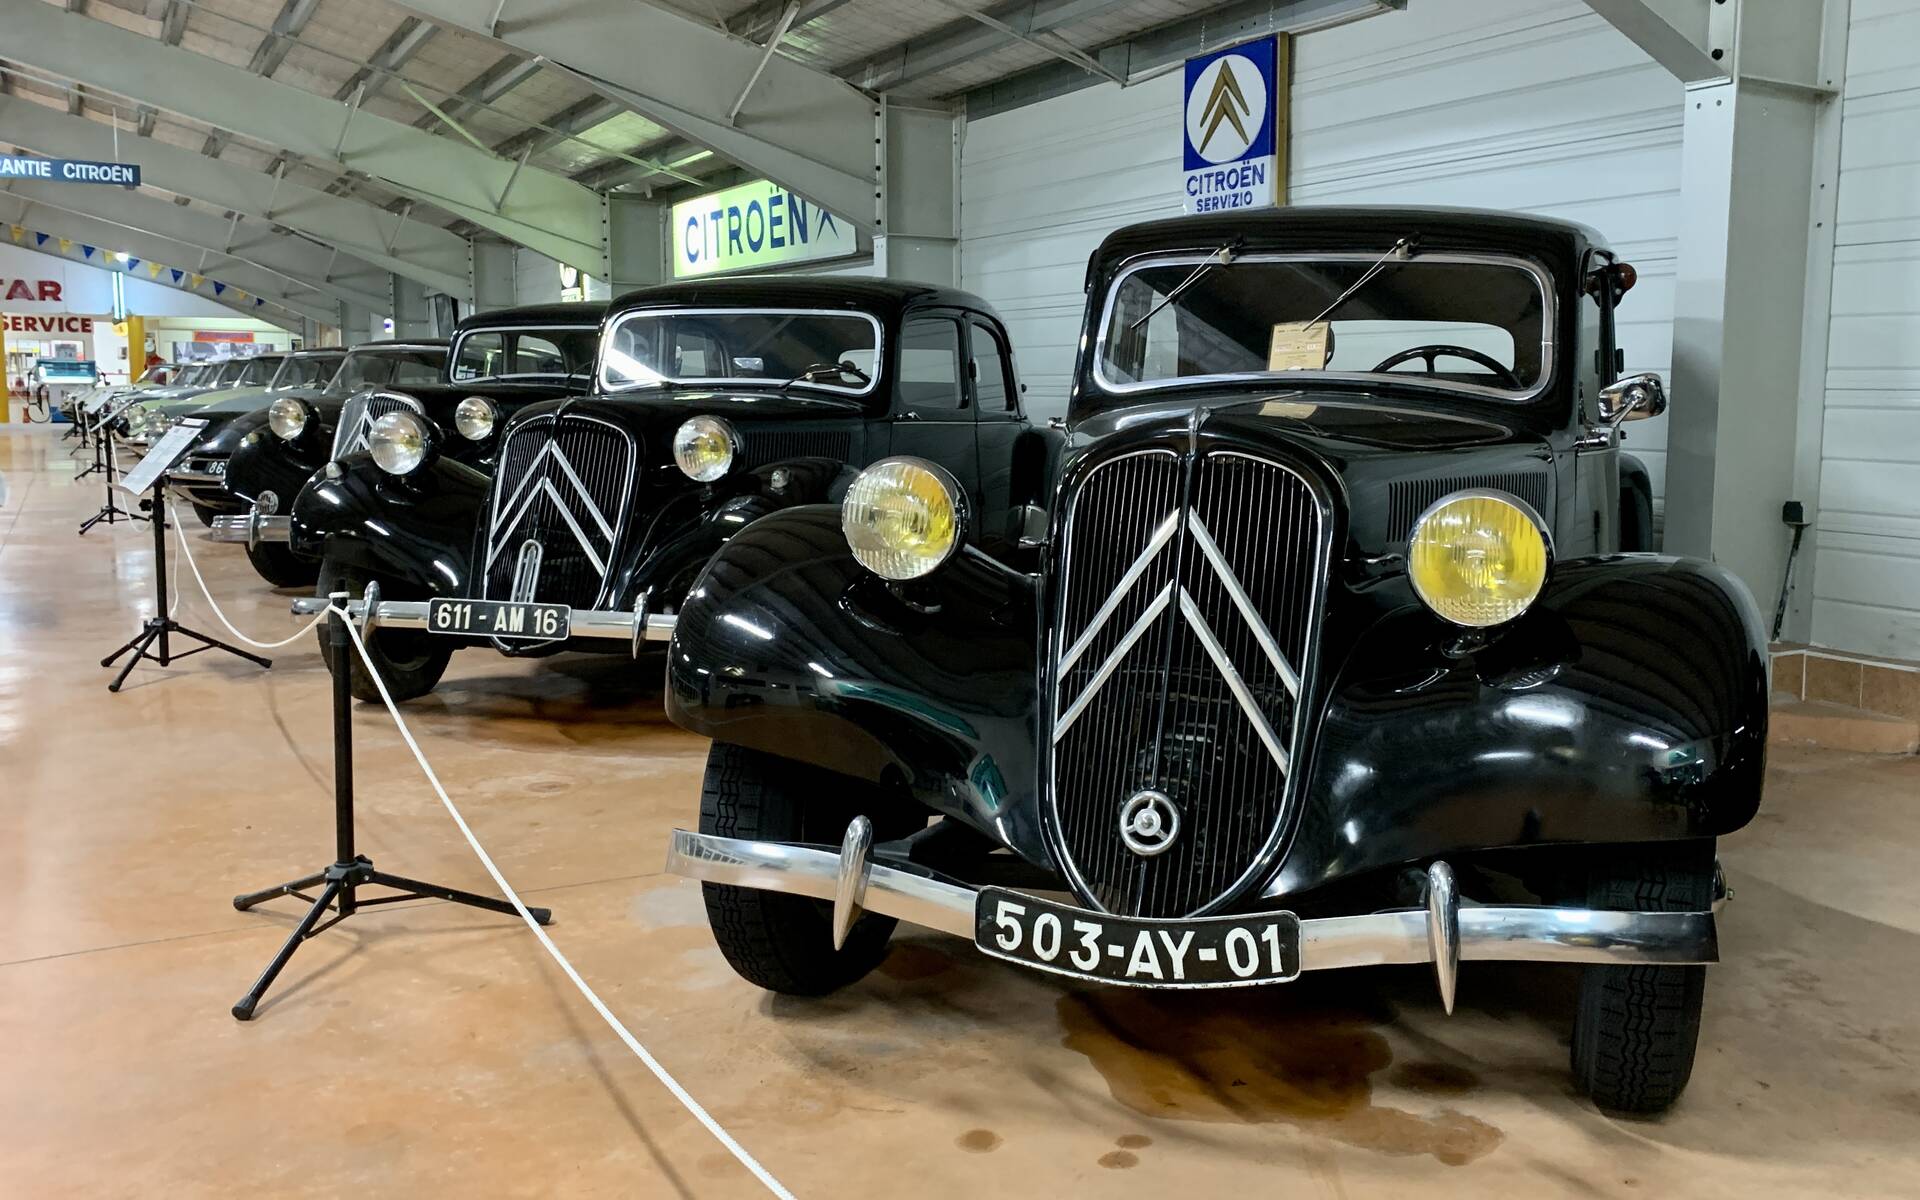 Photos: plus de 100 Citroën d'exception réunies dans un musée en France 543089-photos-plus-de-100-citroen-d-exception-reunies-dans-un-musee-en-france